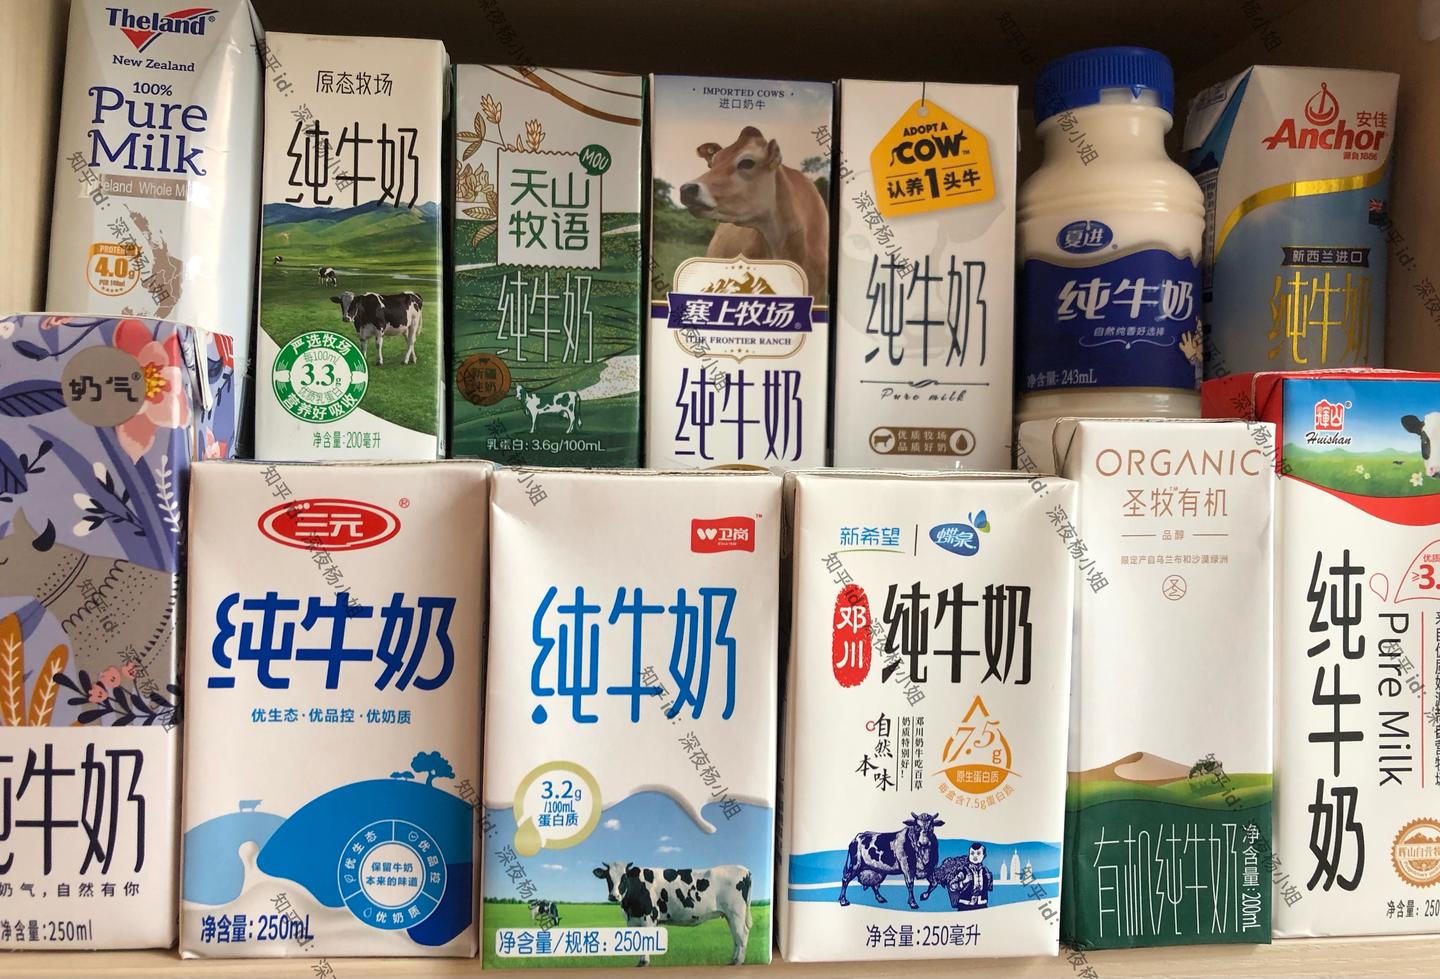 大家喝过奶味香浓好喝的牛奶是什么牌子18款国产纯